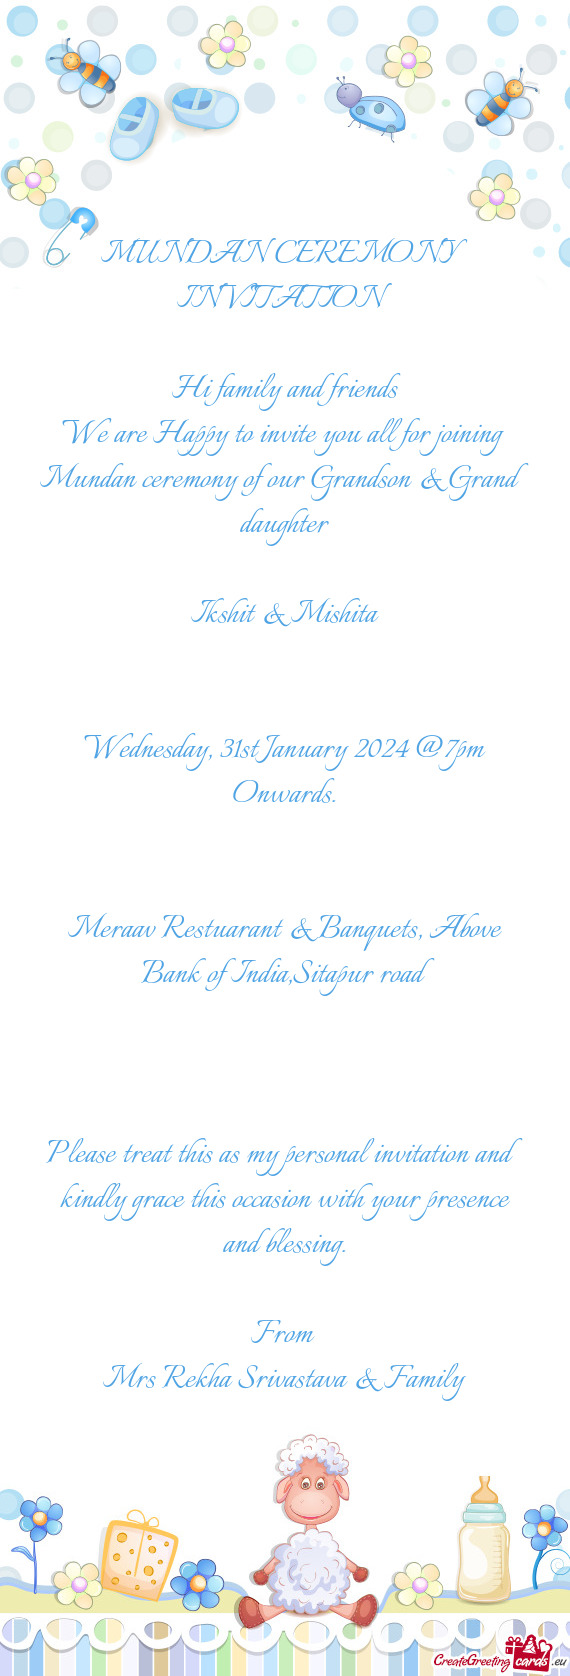 Meraav Restuarant & Banquets, Above Bank of India,Sitapur road